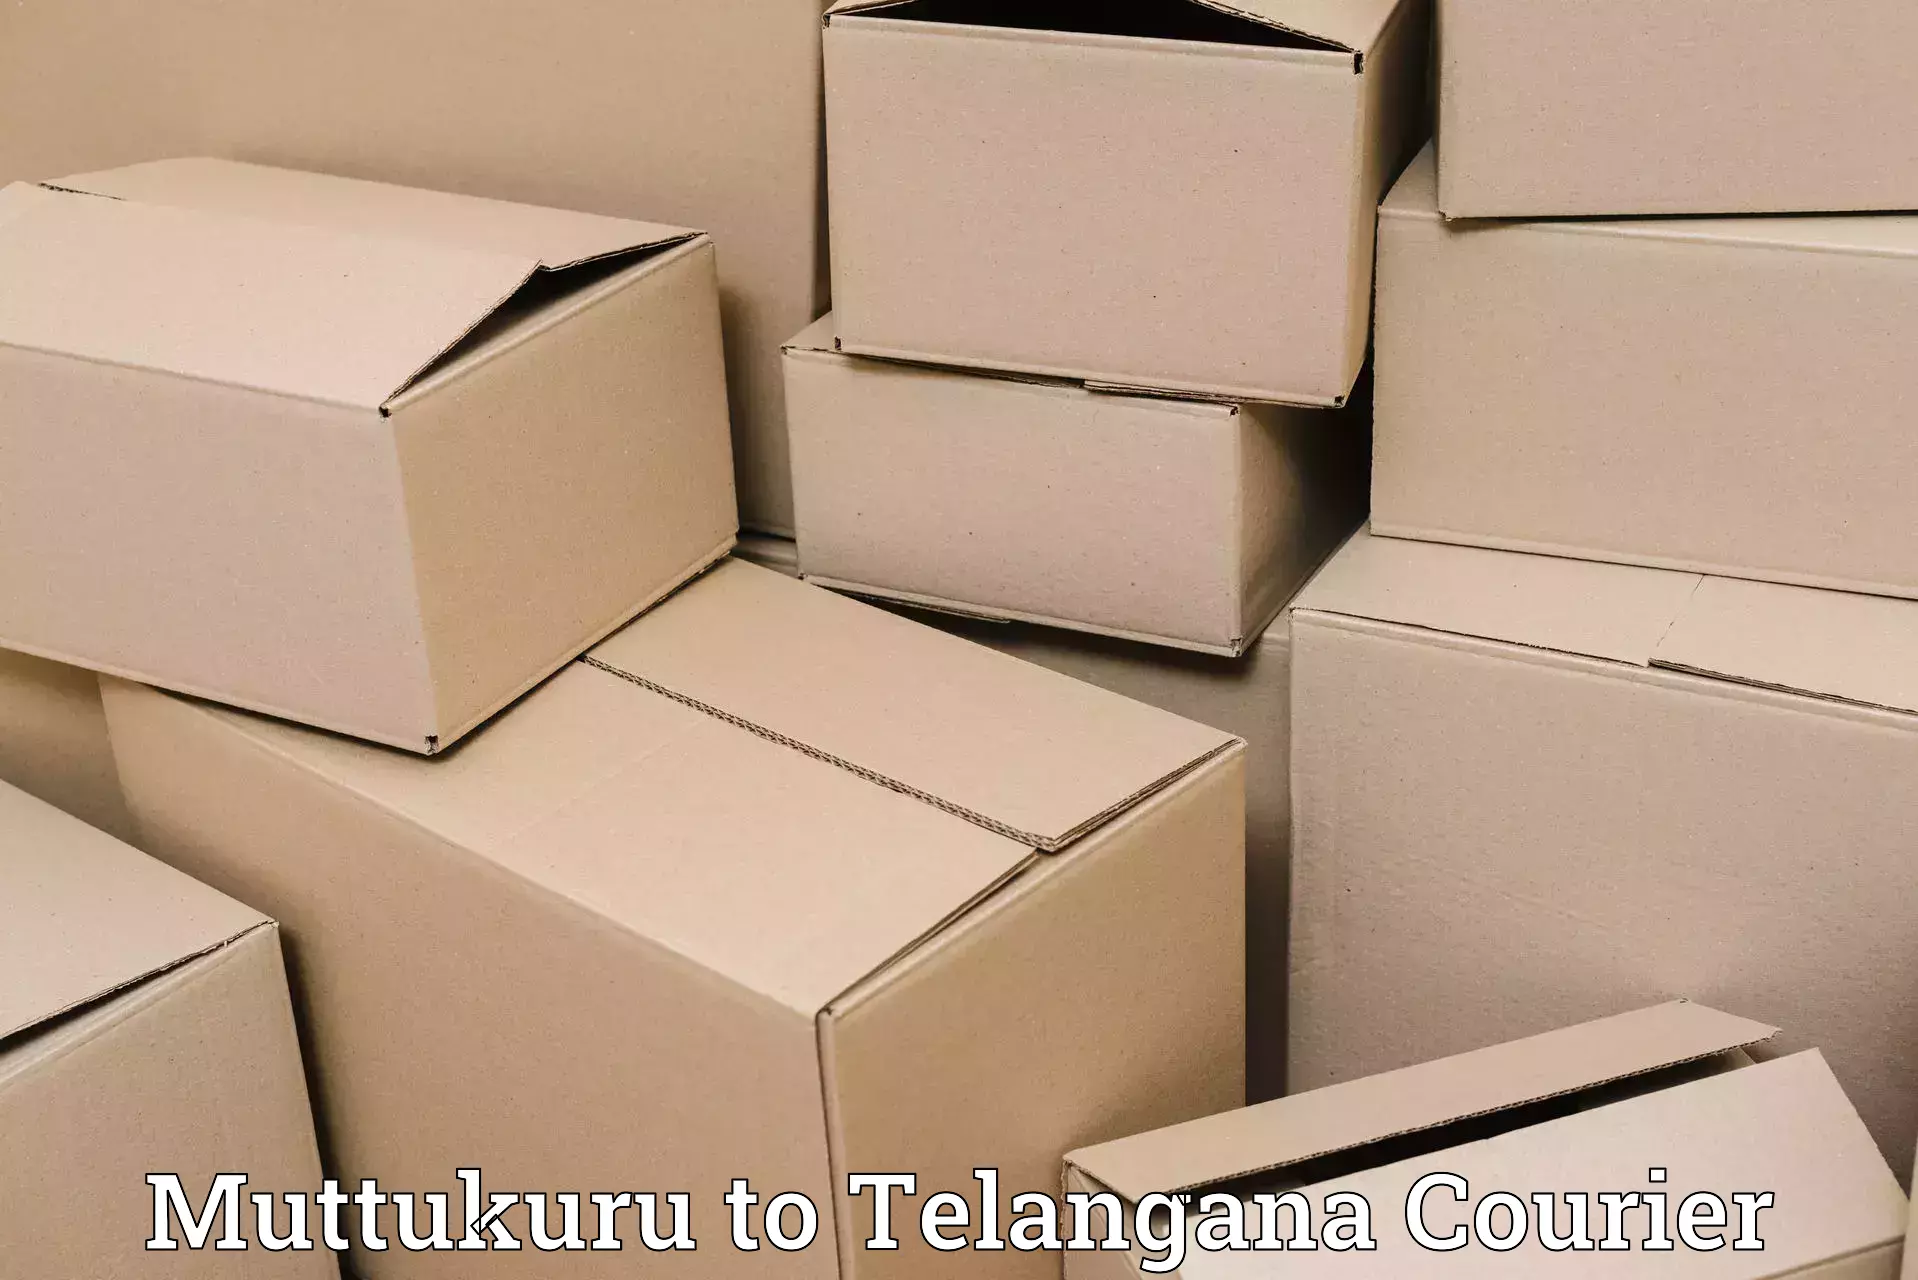 Premium courier solutions Muttukuru to Zahirabad